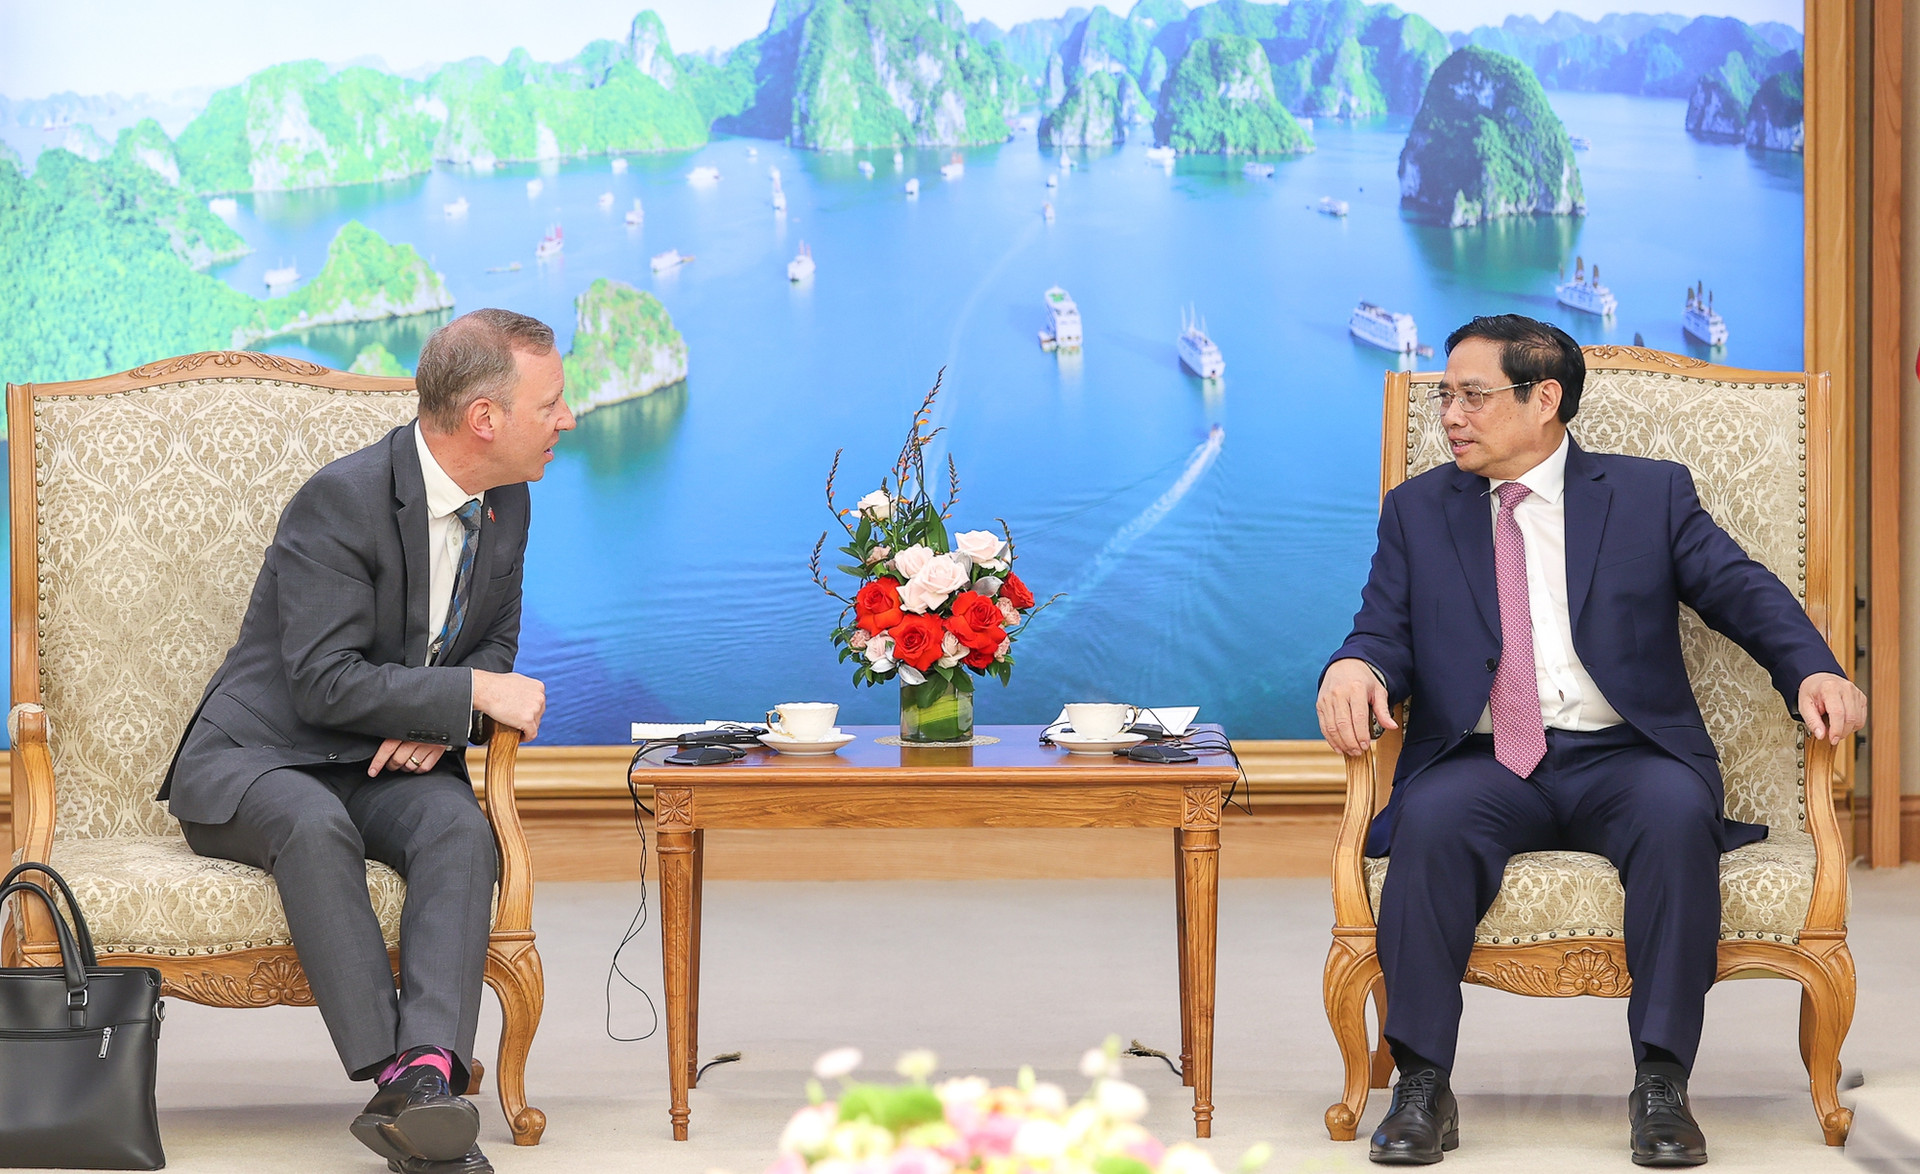 'Cam kết của Thủ tướng tại COP26 giúp cải thiện mạnh mẽ hình ảnh Việt Nam' - Ảnh 2.